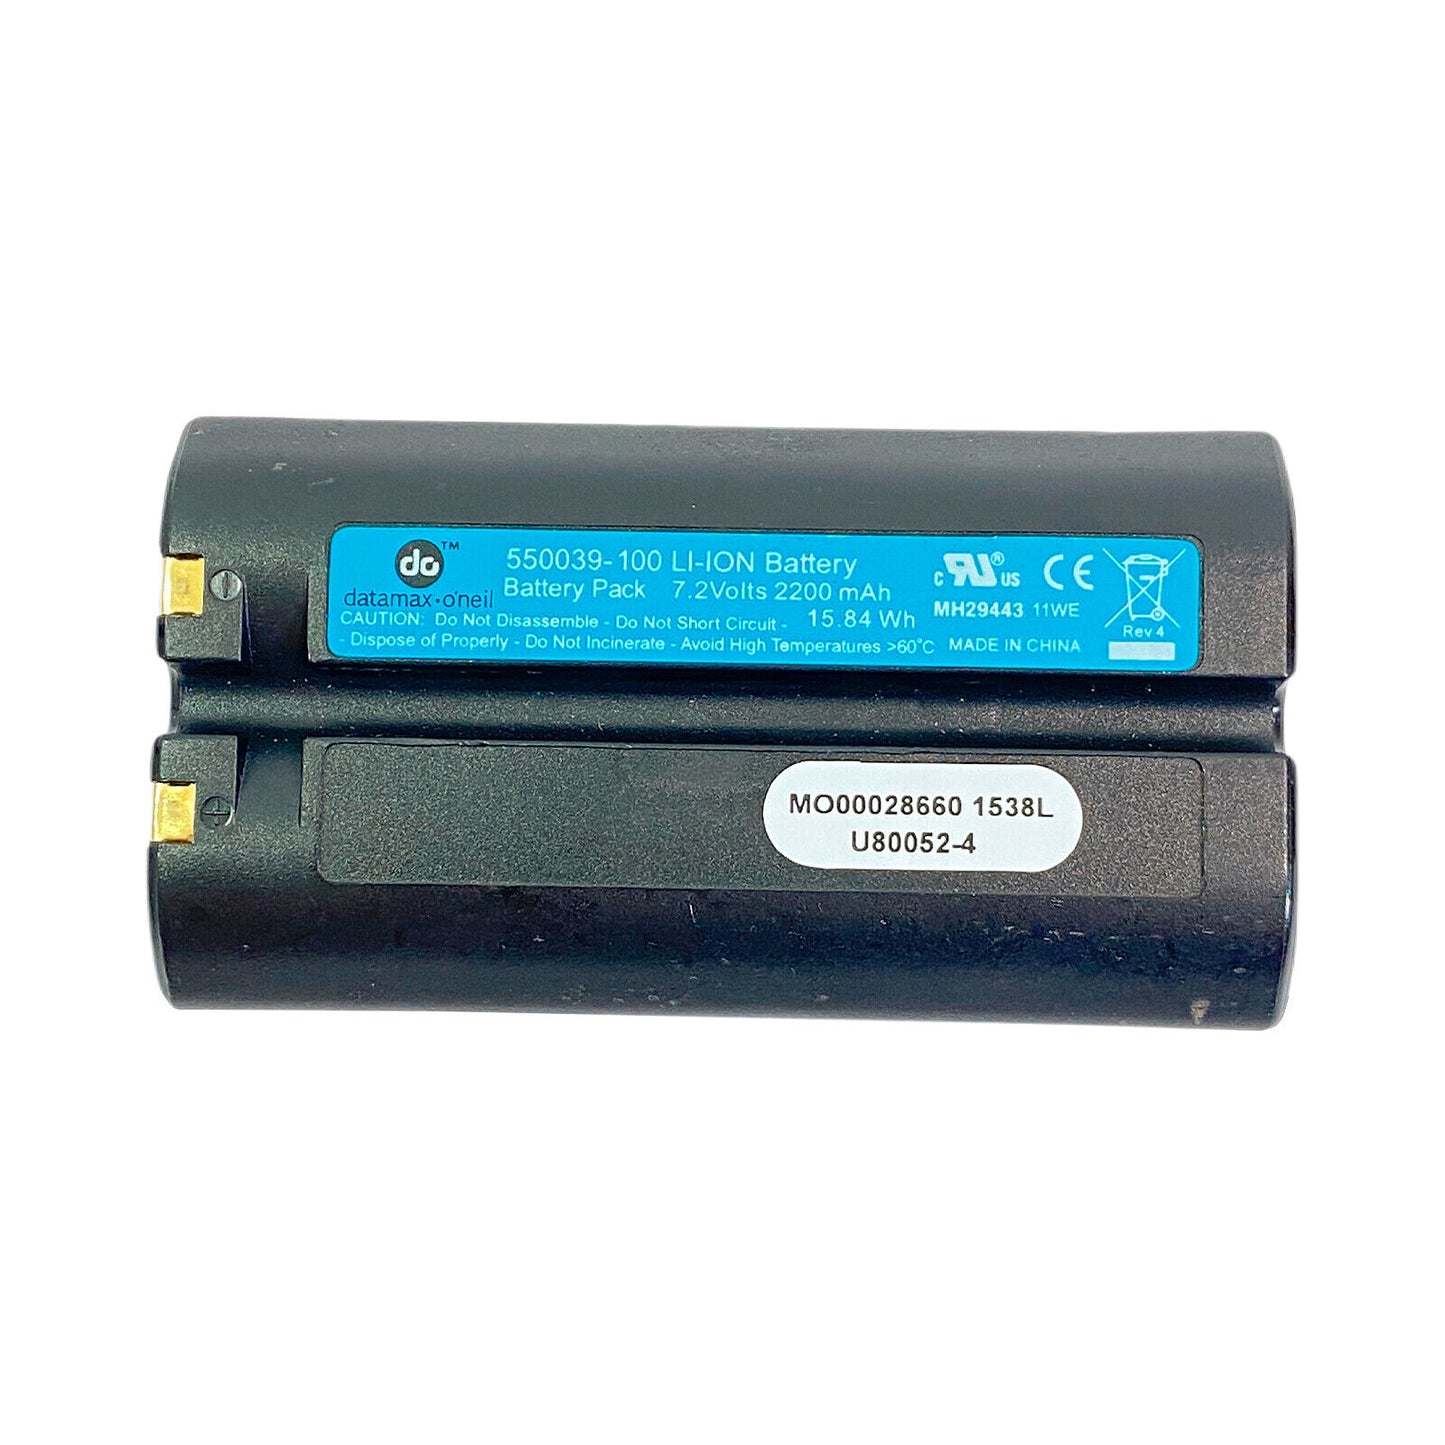 OEM Used Datamax O'neil 550039-100 Li-ion Battery for MF4Te MF4T OC3 OC2 Printer